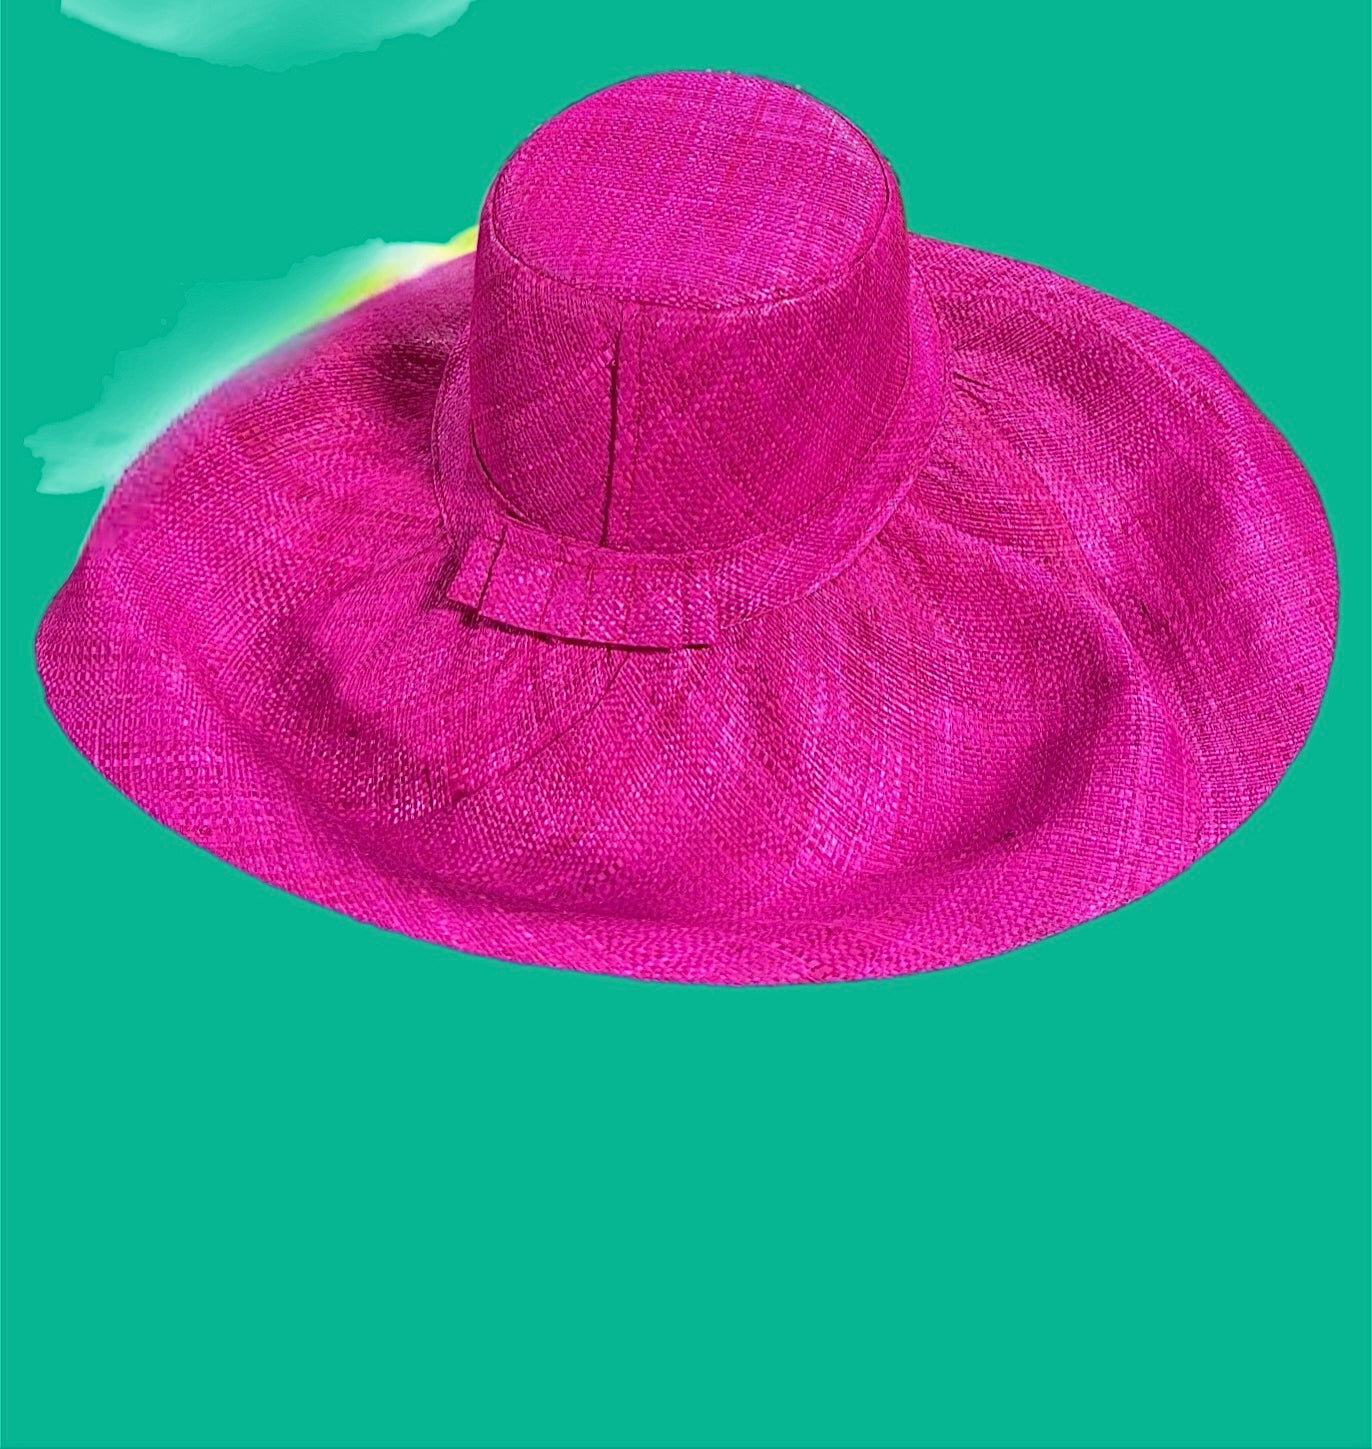 Meena Summer Hat Solid Colors